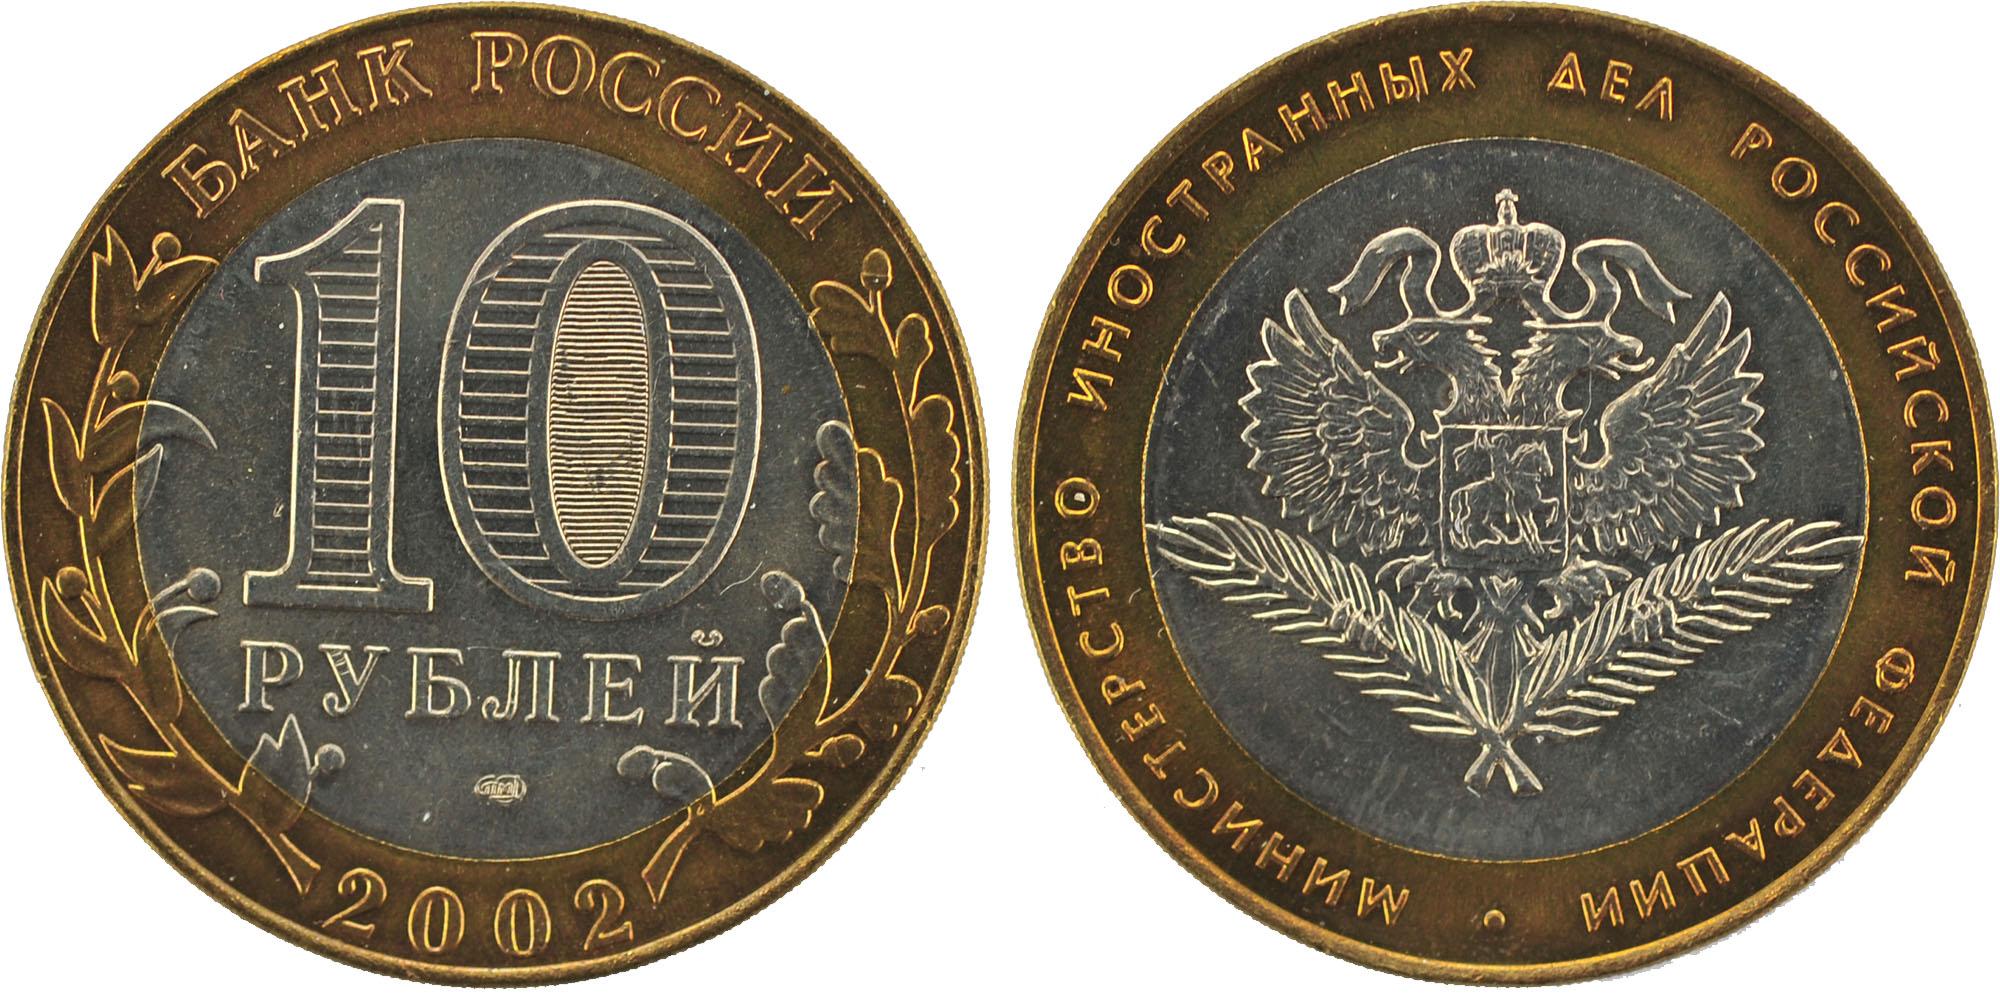 10 рублей 2002 года Министерство иностранных дел Российской Федерации